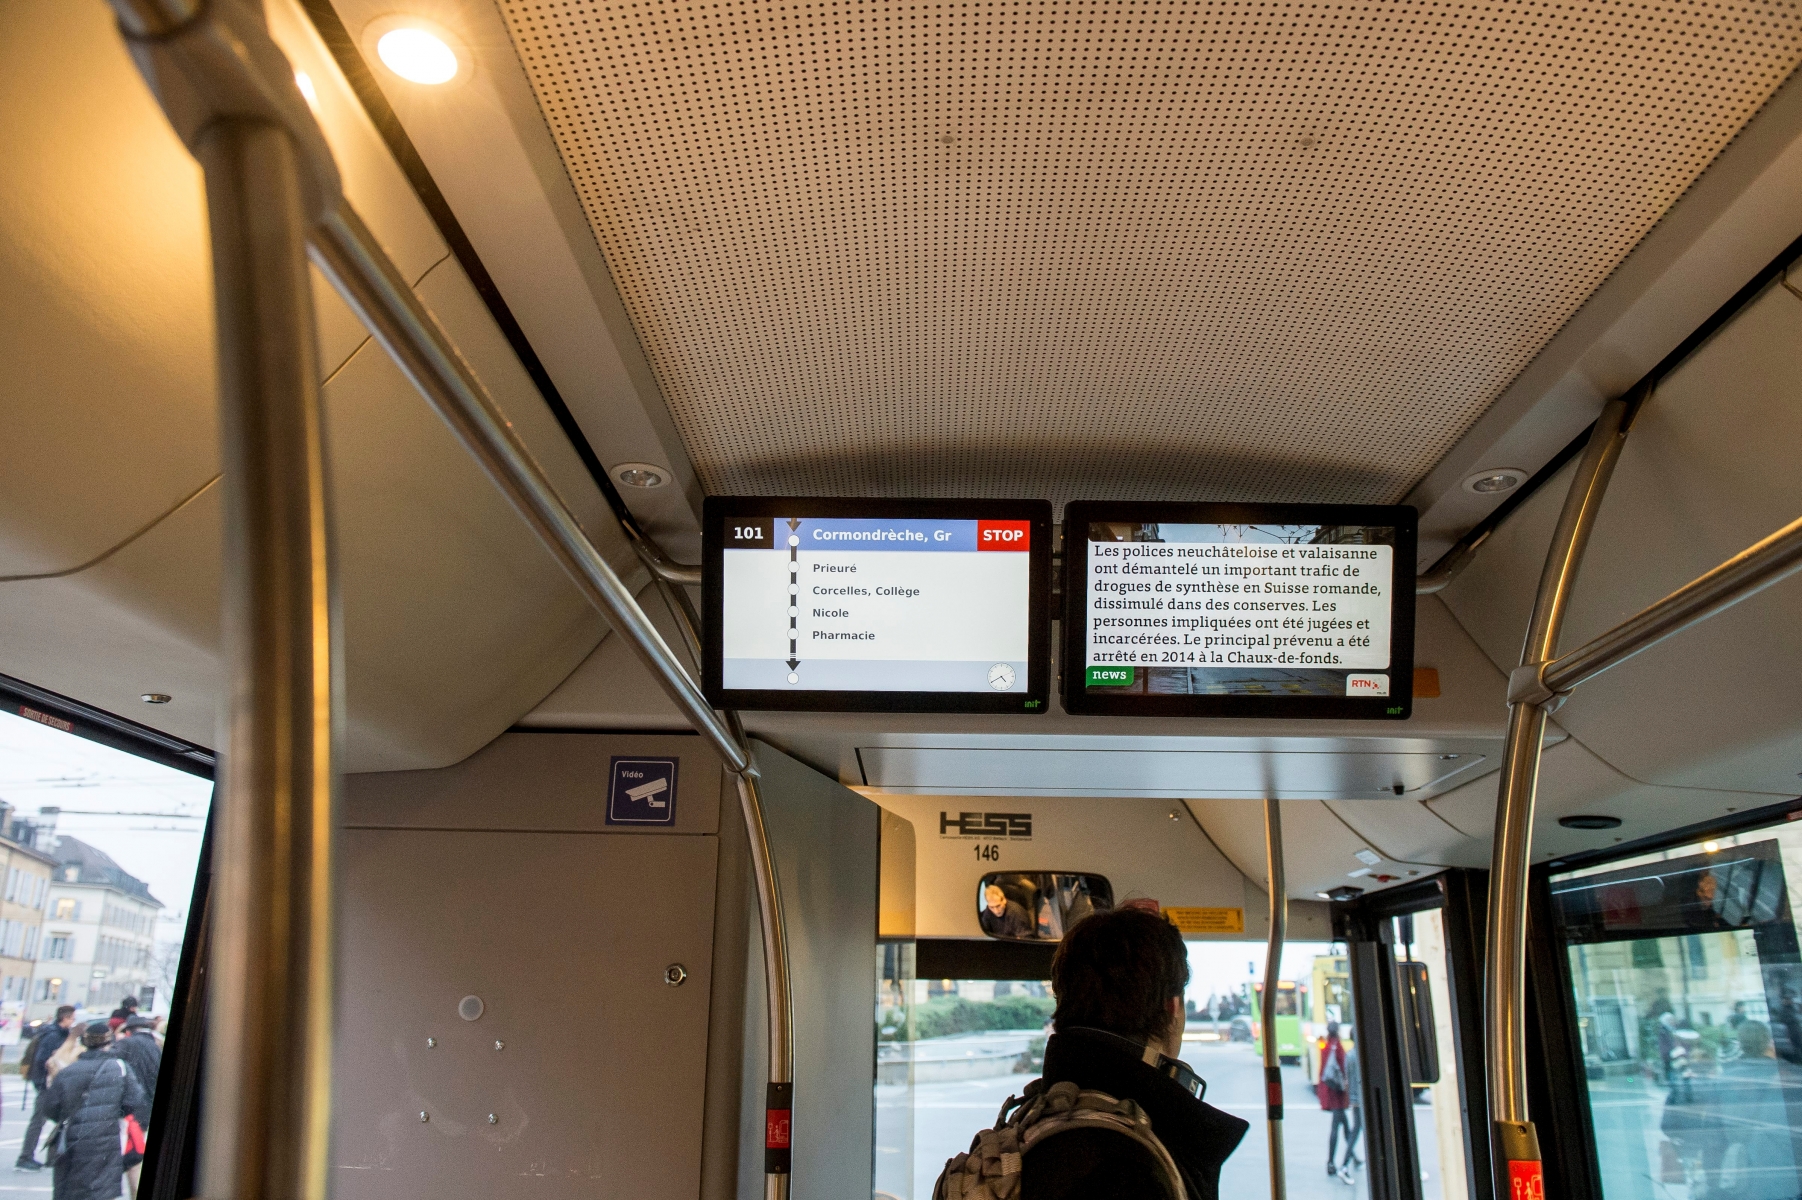 De nouveaux ecrans ont ete installes dans les bus TransN

Neuchatel, le 09.12.2016

Photo : Lucas Vuitel